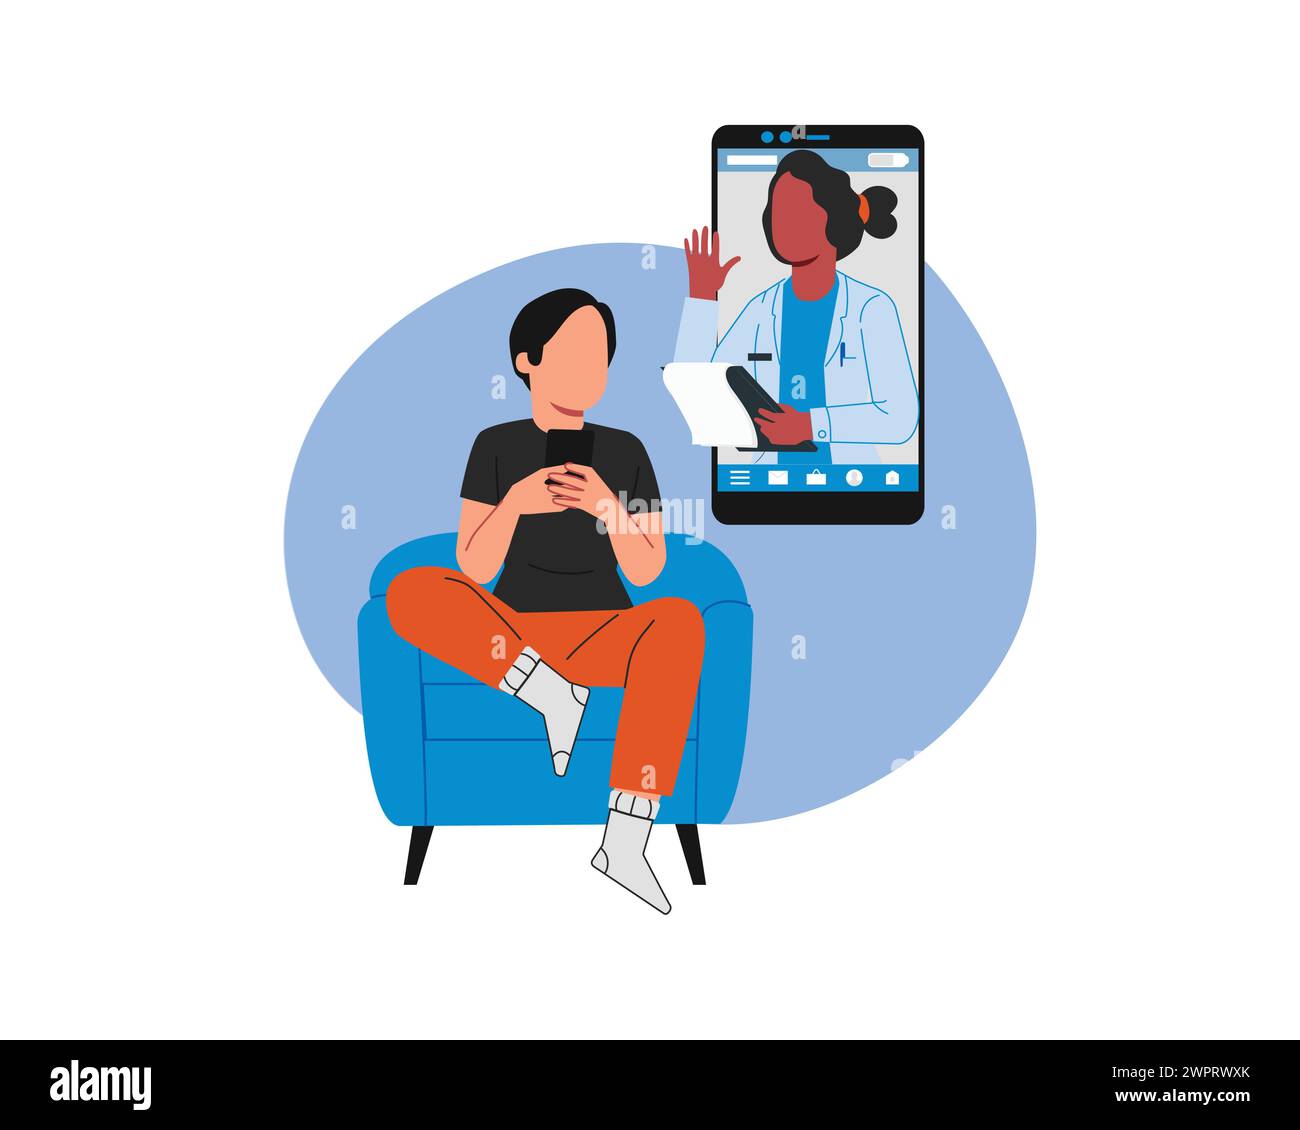 Online-ärztliches Beratungskonzept. Junge Frau, die im Sessel sitzt und ein Smartphone benutzt, um einen Arzt zu rufen. Vektorabbildung in abgewickelter Form Stock Vektor